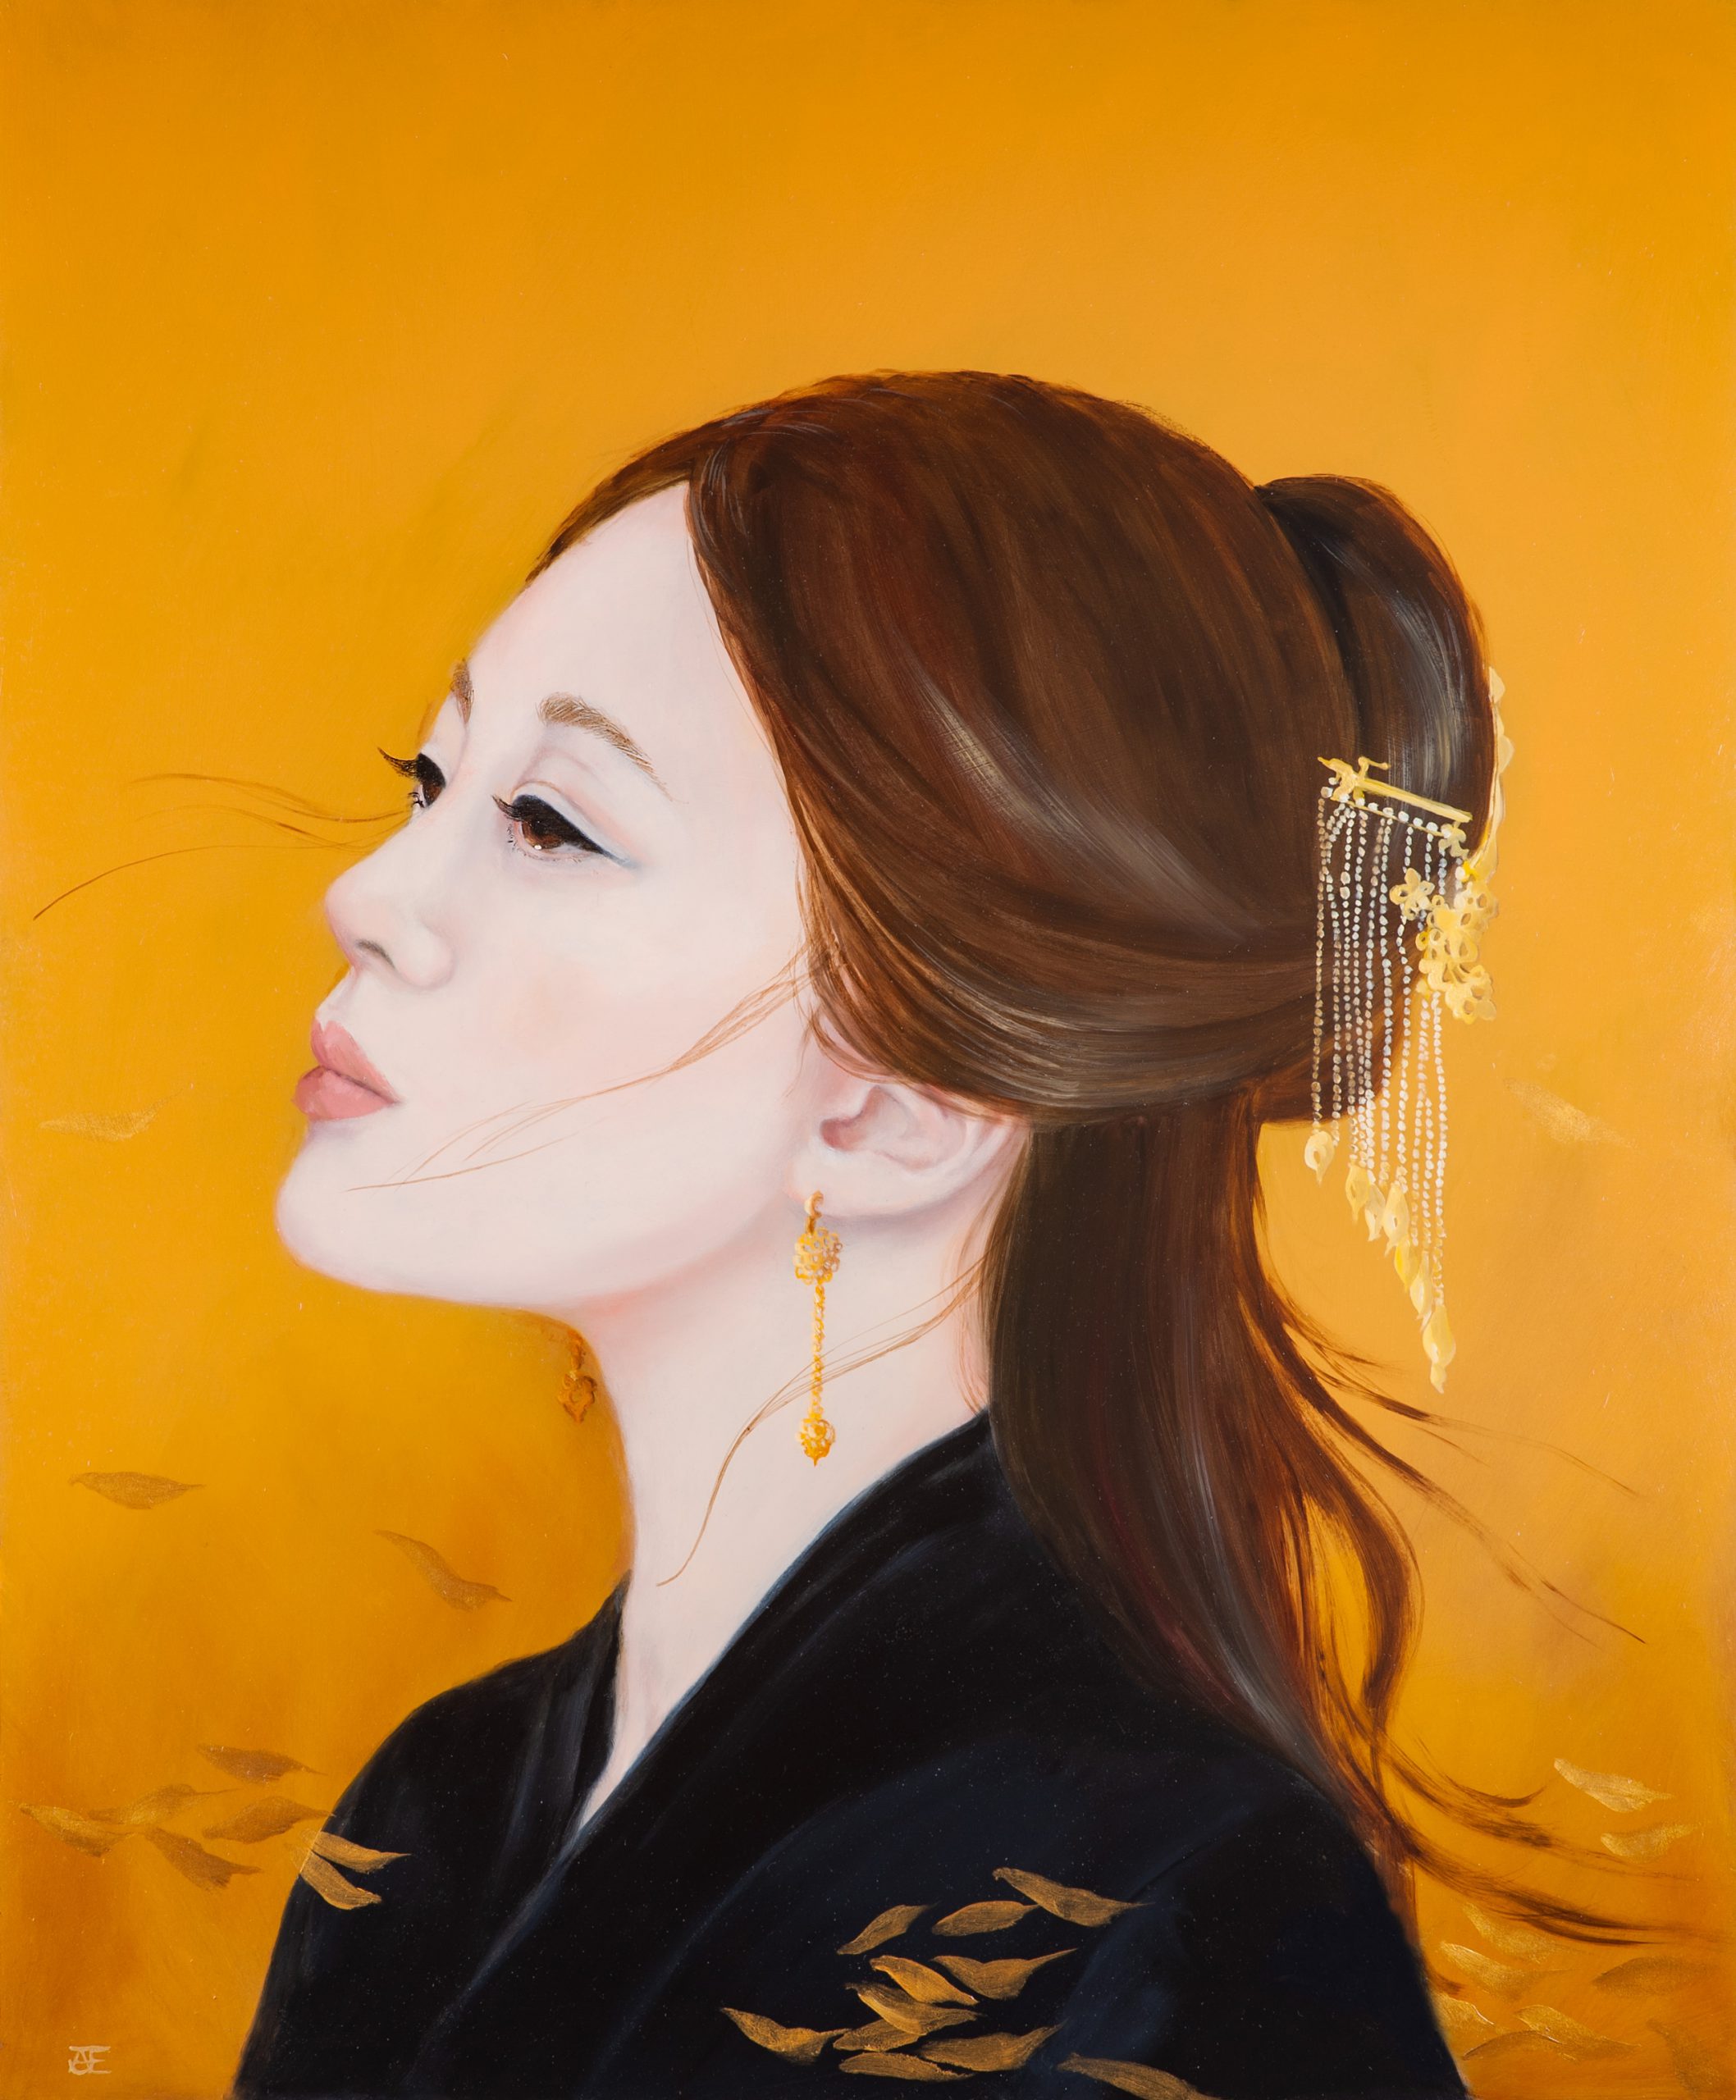 Een olieverfportret op een paneel van 50 x 60 cm, in opdracht geschilderd, toont een Aziatische vrouw in een kimono met lang, bruin haar en goudkleurige oorbellen tegen een oranje achtergrond. Dit kunstwerk is in 2021 geschilderd door kunstenaar Anneke Ensing.